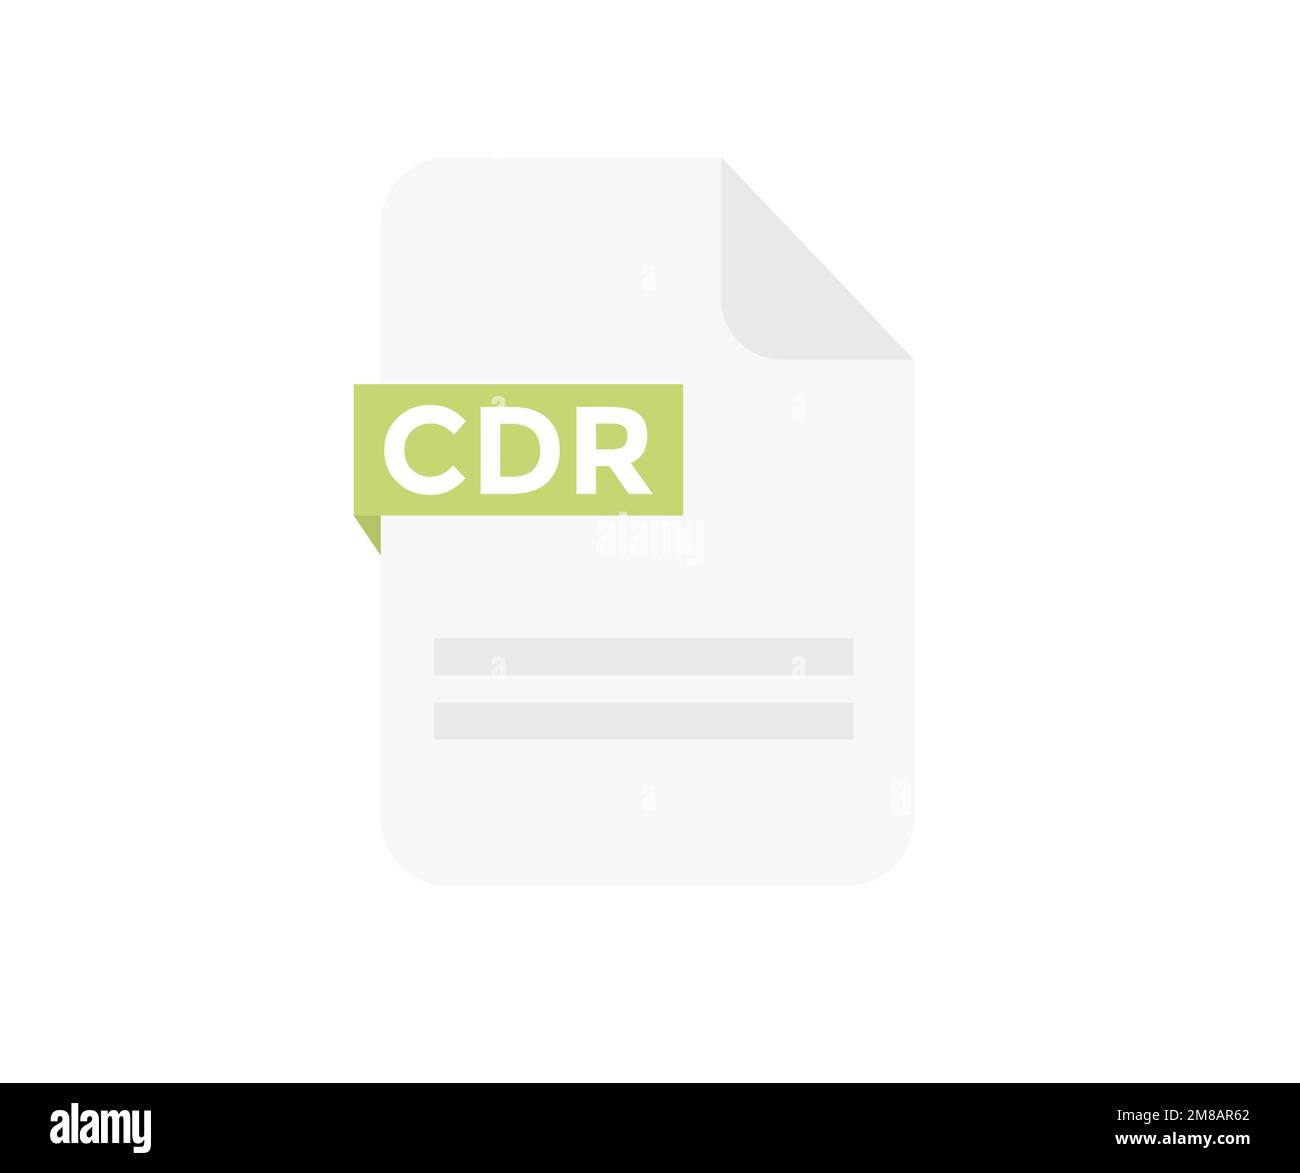 Formato file design del logo CDR. Icona del file del documento. Elemento per applicazioni, siti Web e servizi dati. Formato ed estensione dei documenti disegno vettoriale. Illustrazione Vettoriale